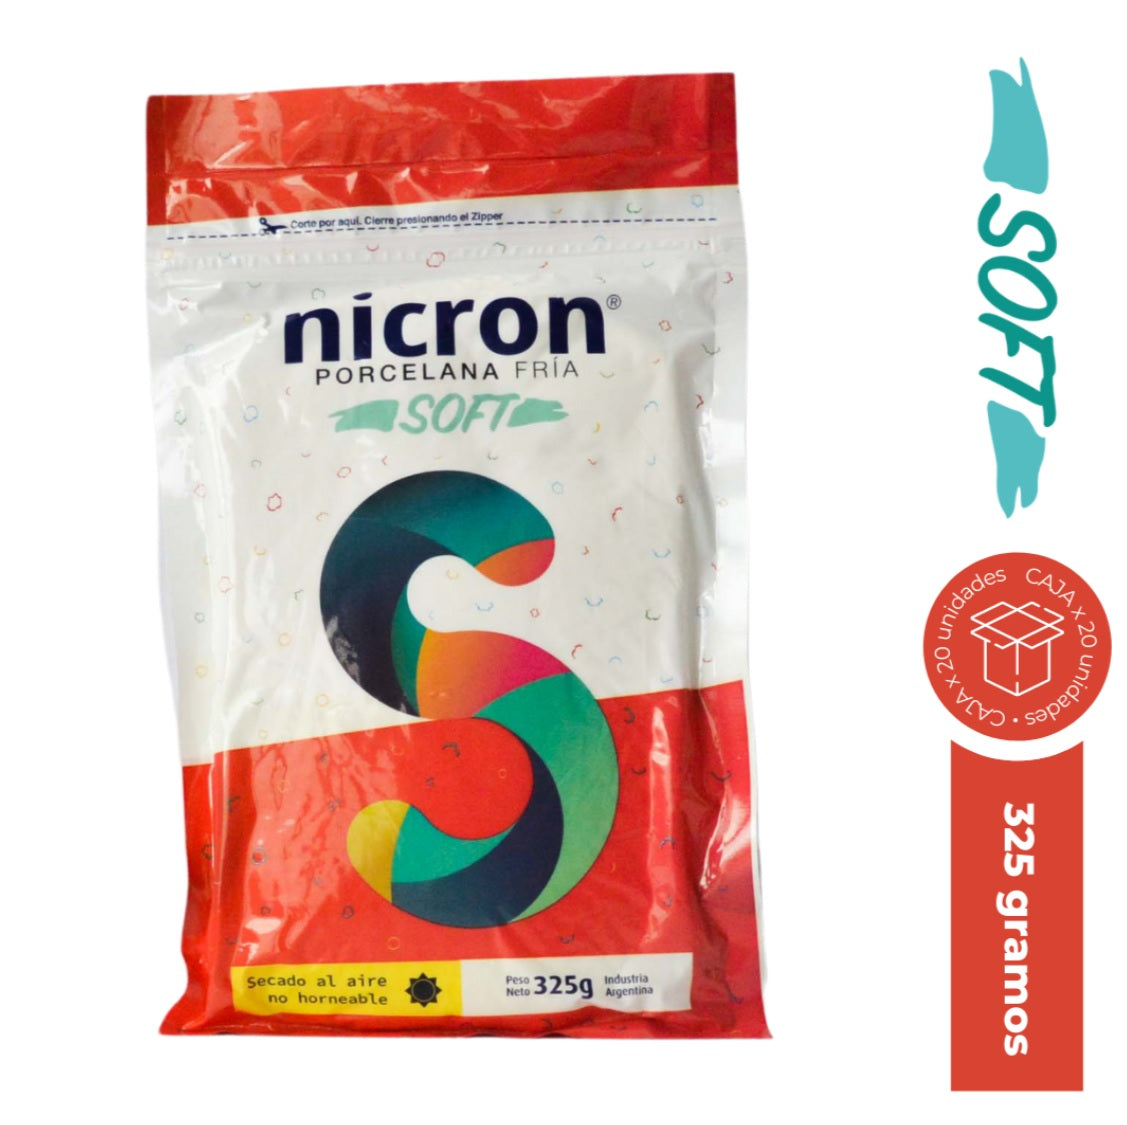 Nicron Soft Porcelana Fria